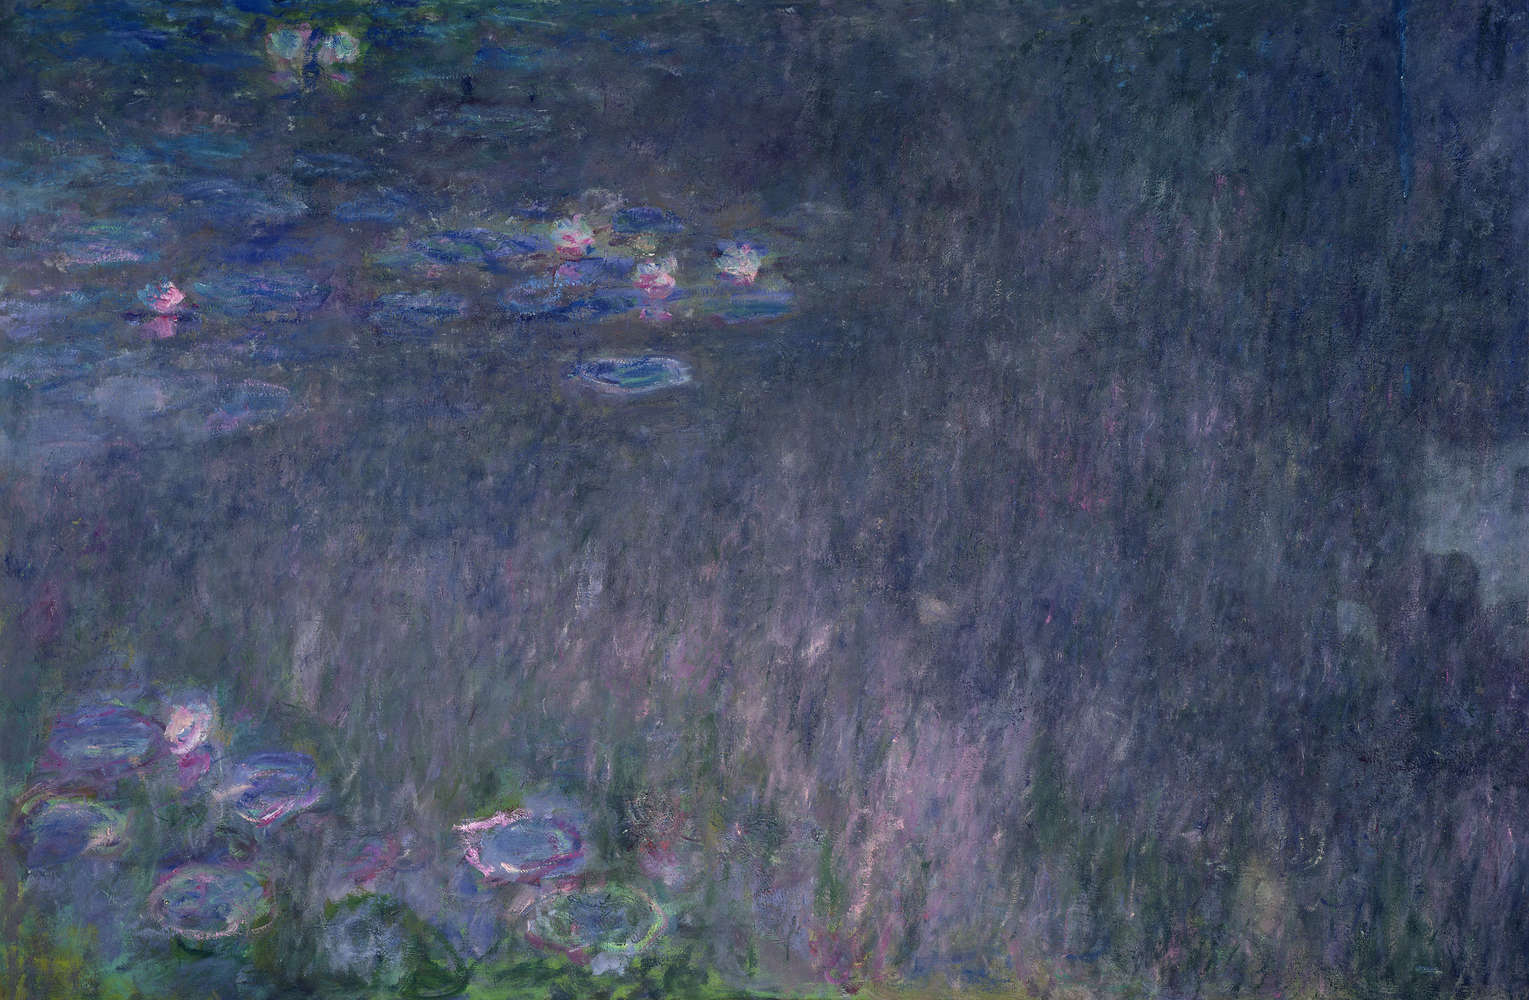             Papier peint "Nymphéas : reflet des arbres" de Claude Monet
        